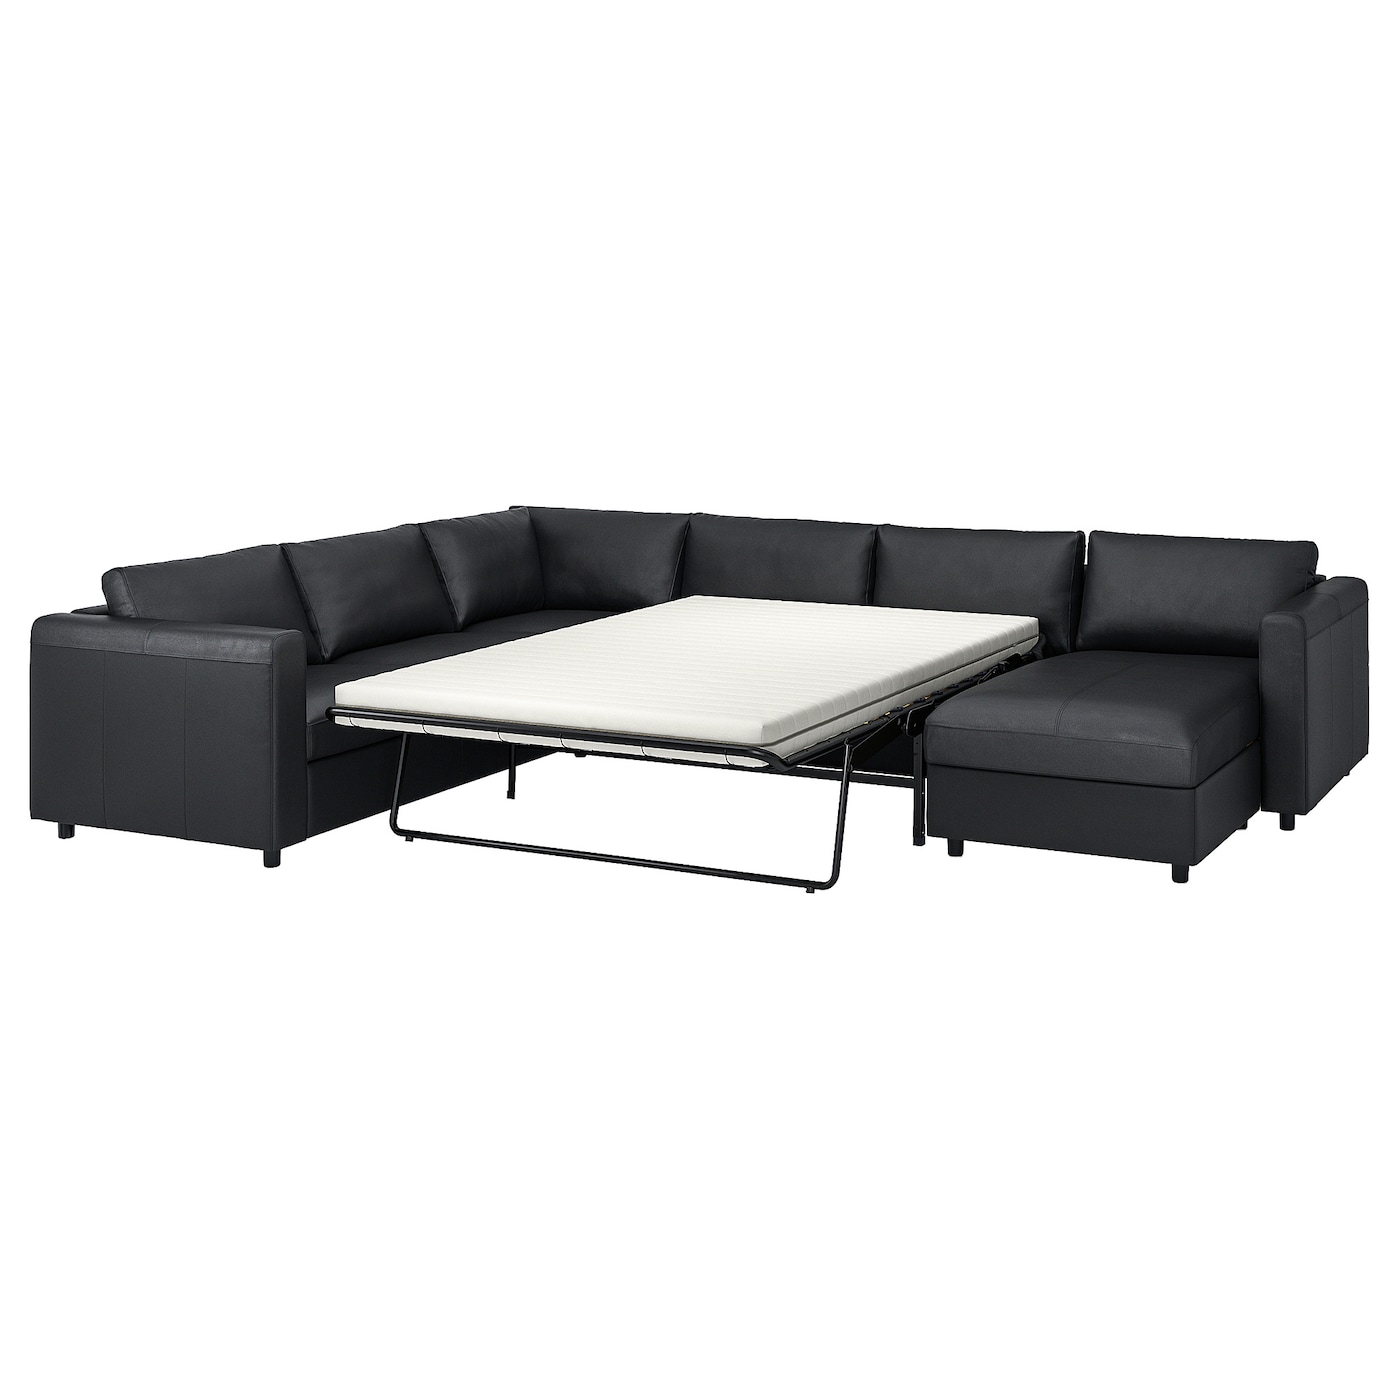 ВИМЛЕ 5-местный, диван-кровать угловой раздел., Гранн/Бомстад черный VIMLE IKEA